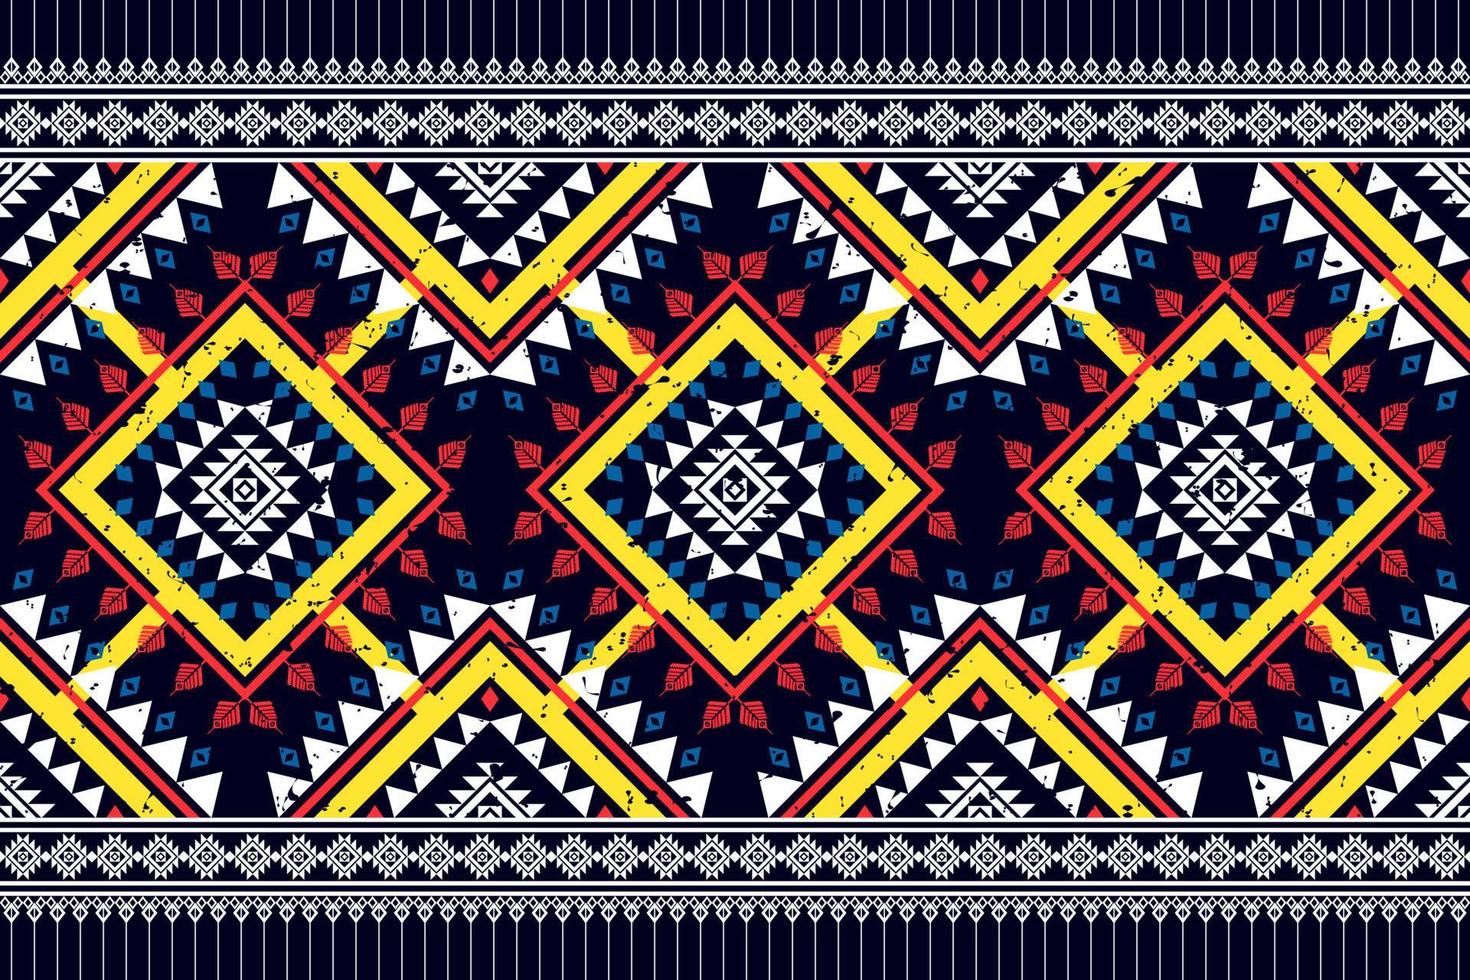 geometrisches ethnisches nahtloses Musterdesign. aztekischer Stoff Teppich Mandala Ornament Chevron Textildekoration Tapete. Tribal Truthahn afrikanische indische traditionelle Stickerei Vektor Hintergrund